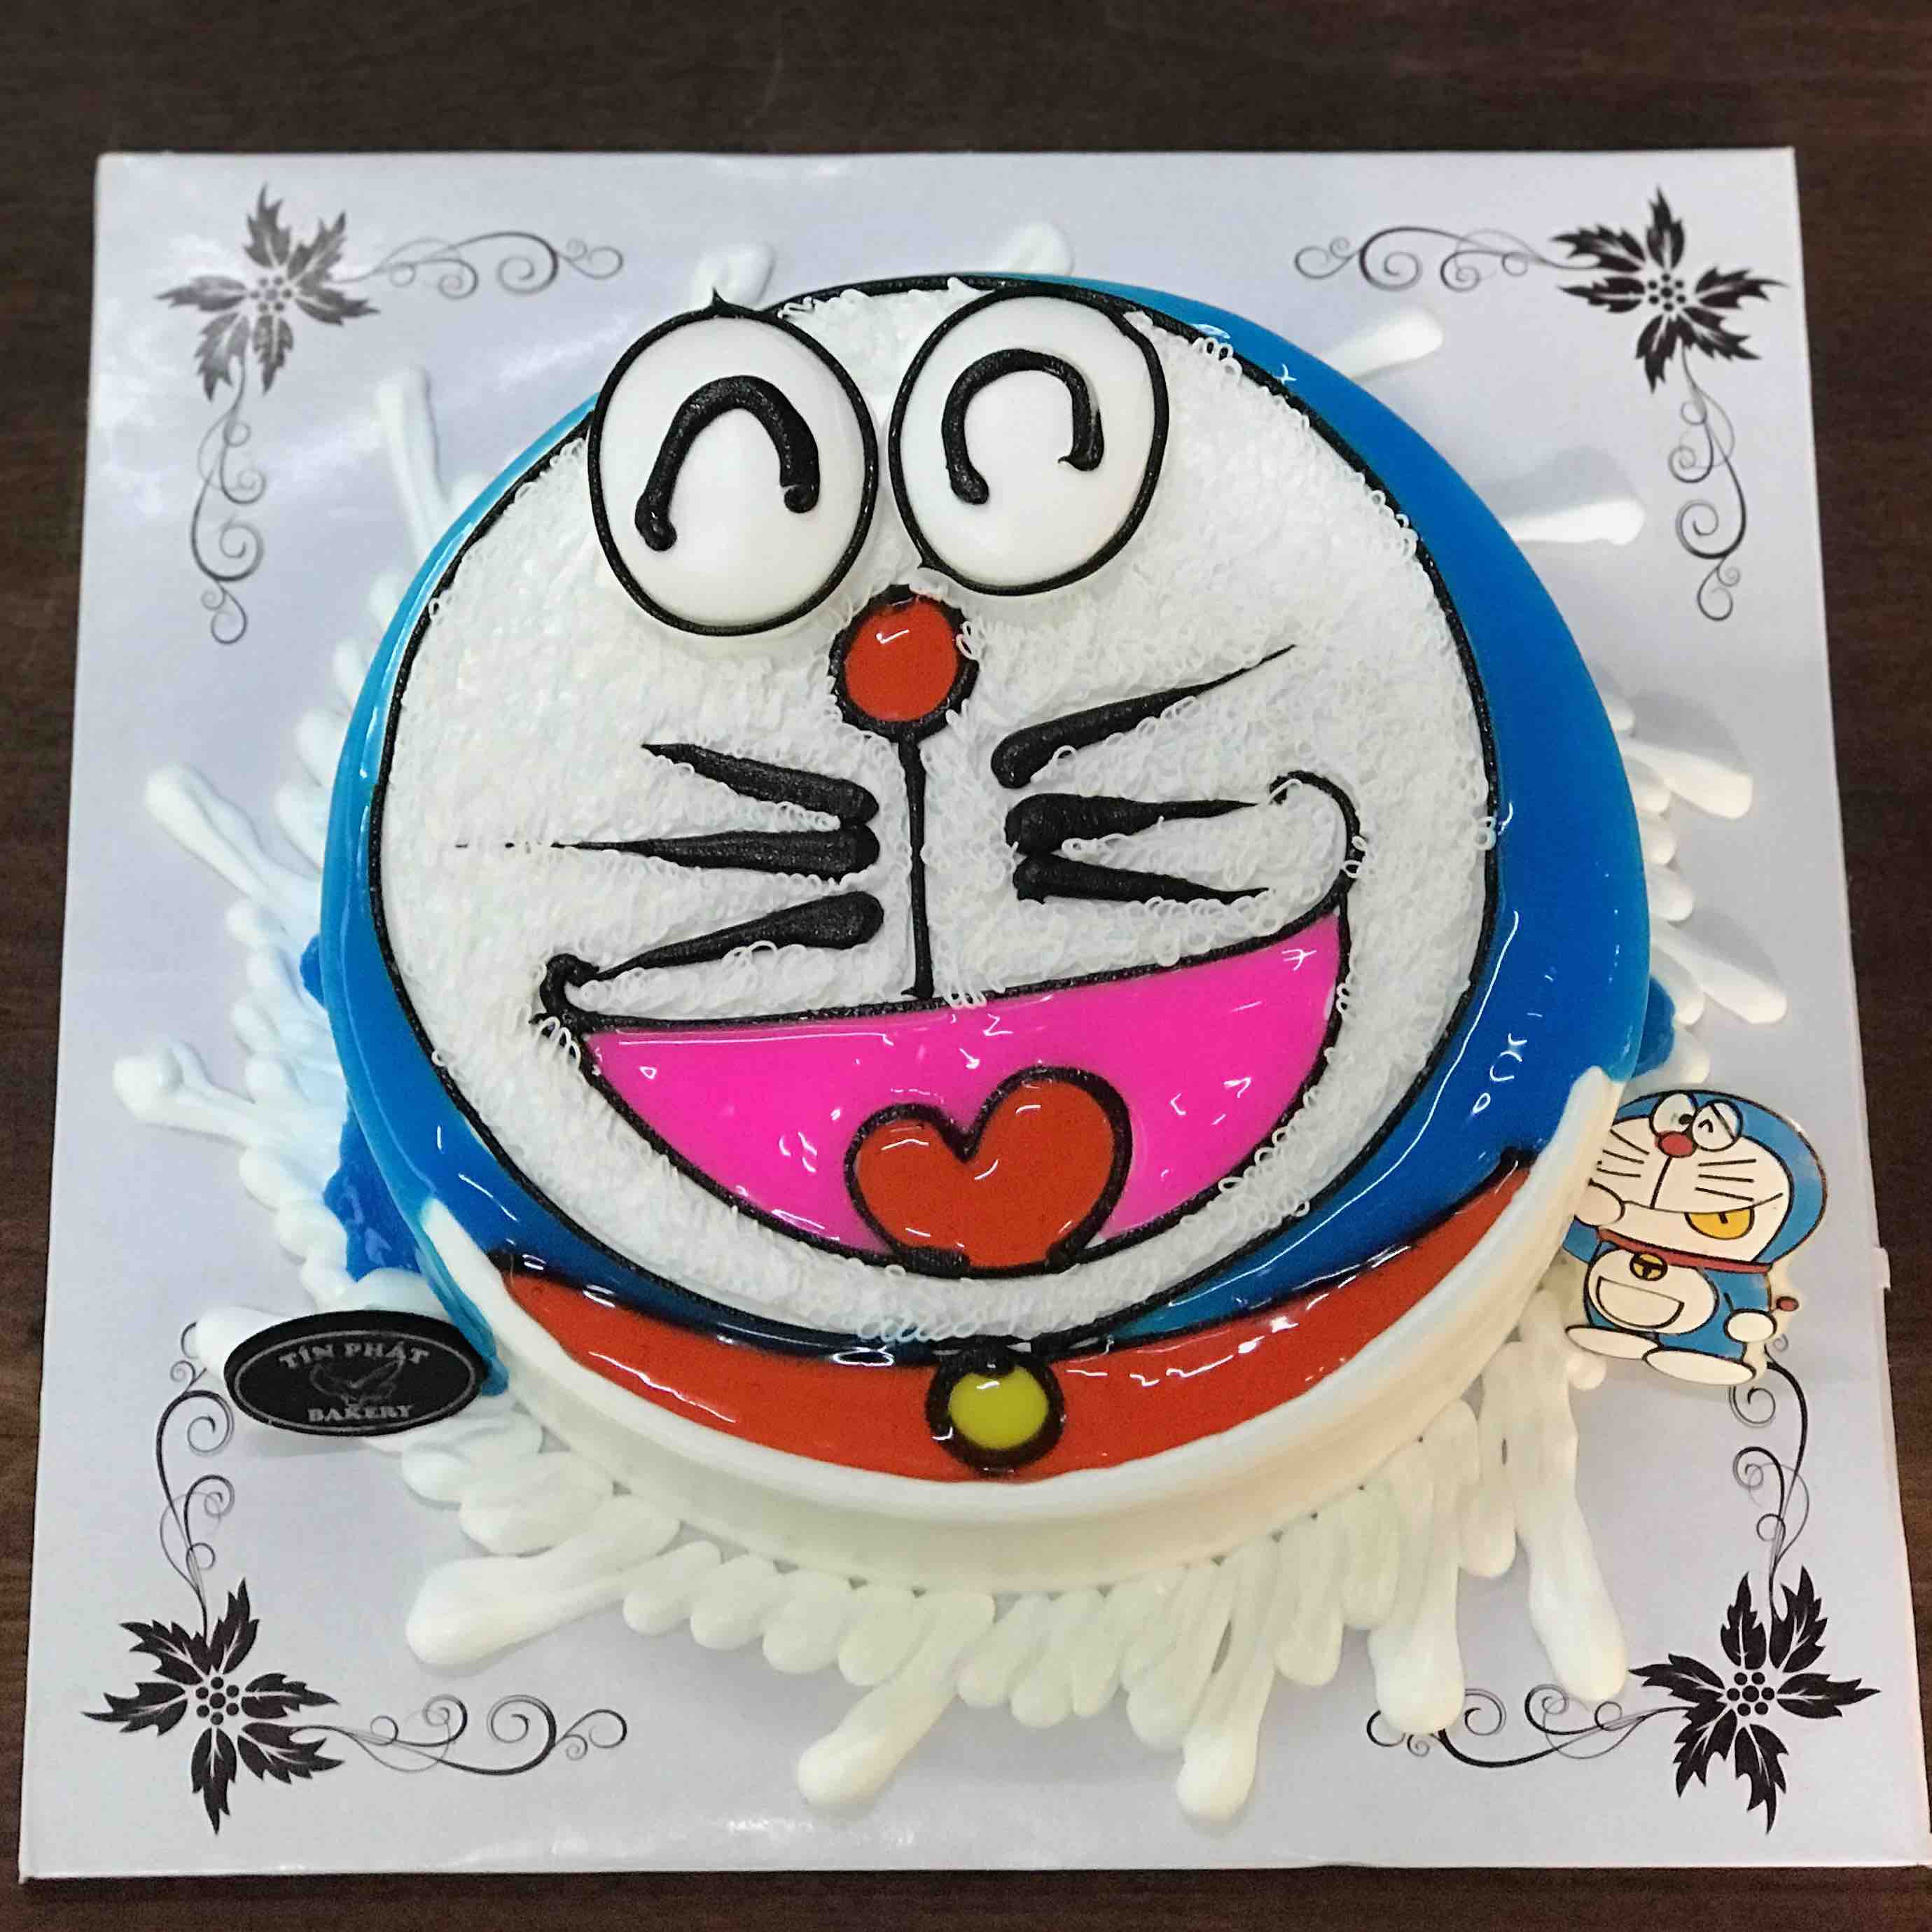 Bánh kem Doremon 20: Chàng mèo máy Doremon đã trưởng thành và kỷ niệm 20 năm đầy ý nghĩa. Và để đánh dấu sự kiện này, chúng tôi xin giới thiệu đến bạn chiếc bánh kem Doremon 20 với hình ảnh tuyệt đẹp và hương vị thơm ngon đặc trưng. Hãy cùng chia sẻ niềm vui này cùng bạn bè và người thân.